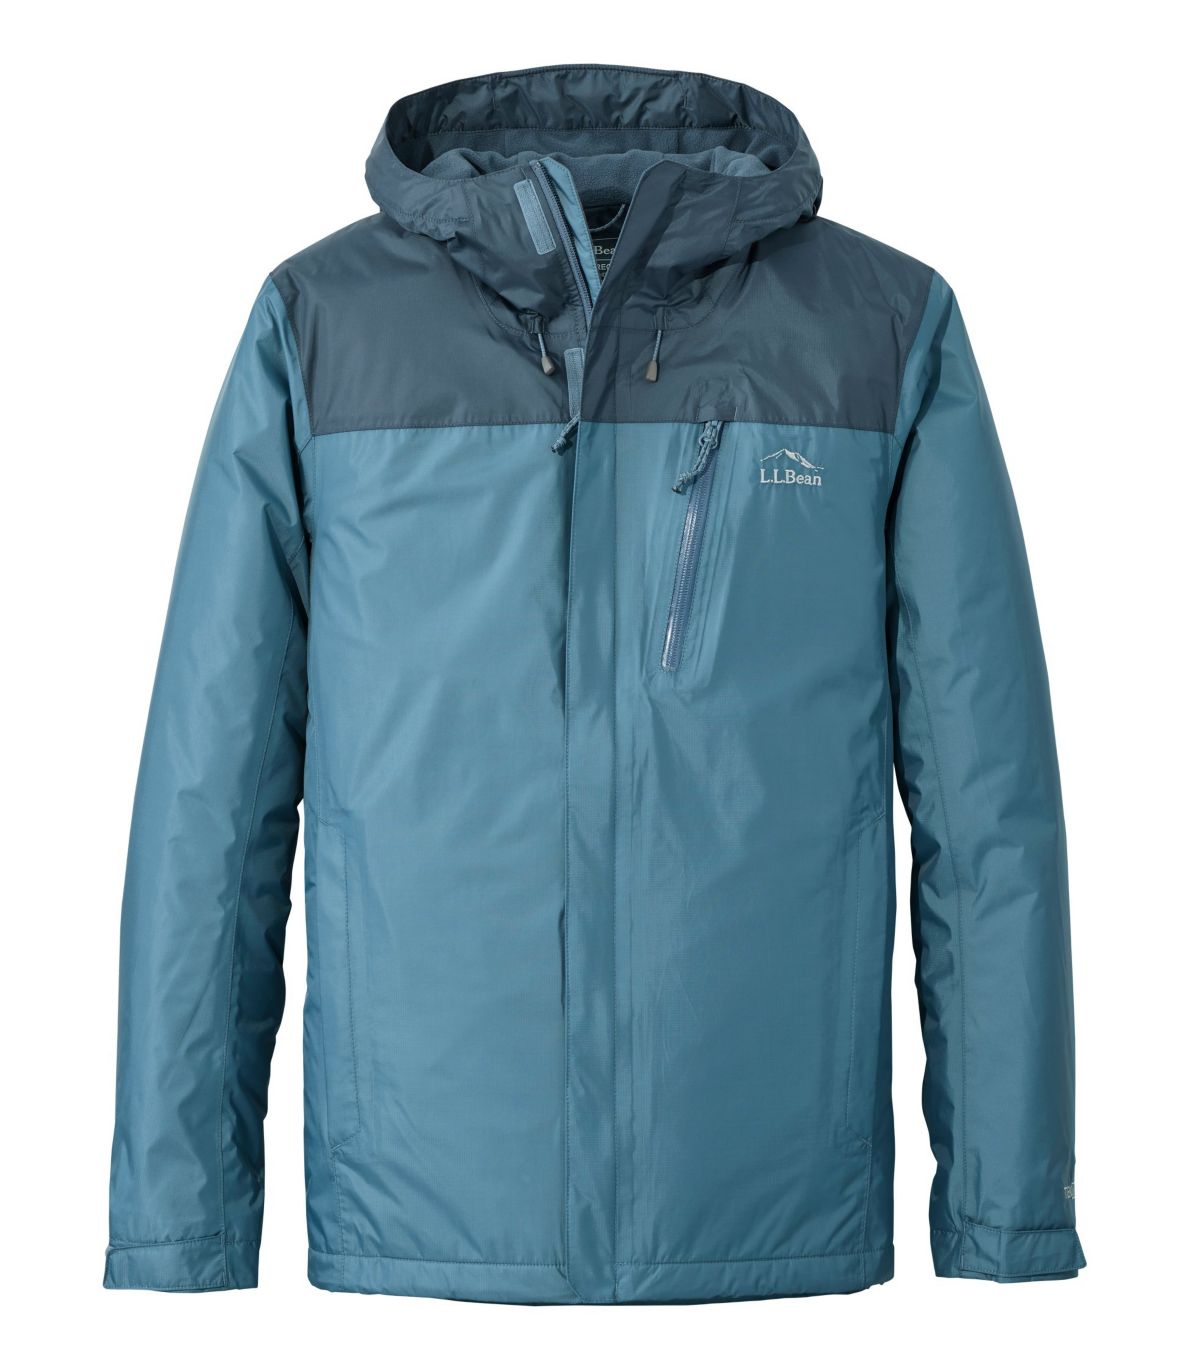 Men's Trail Model Rain Jacket, Fleece-Lined, Colorblock